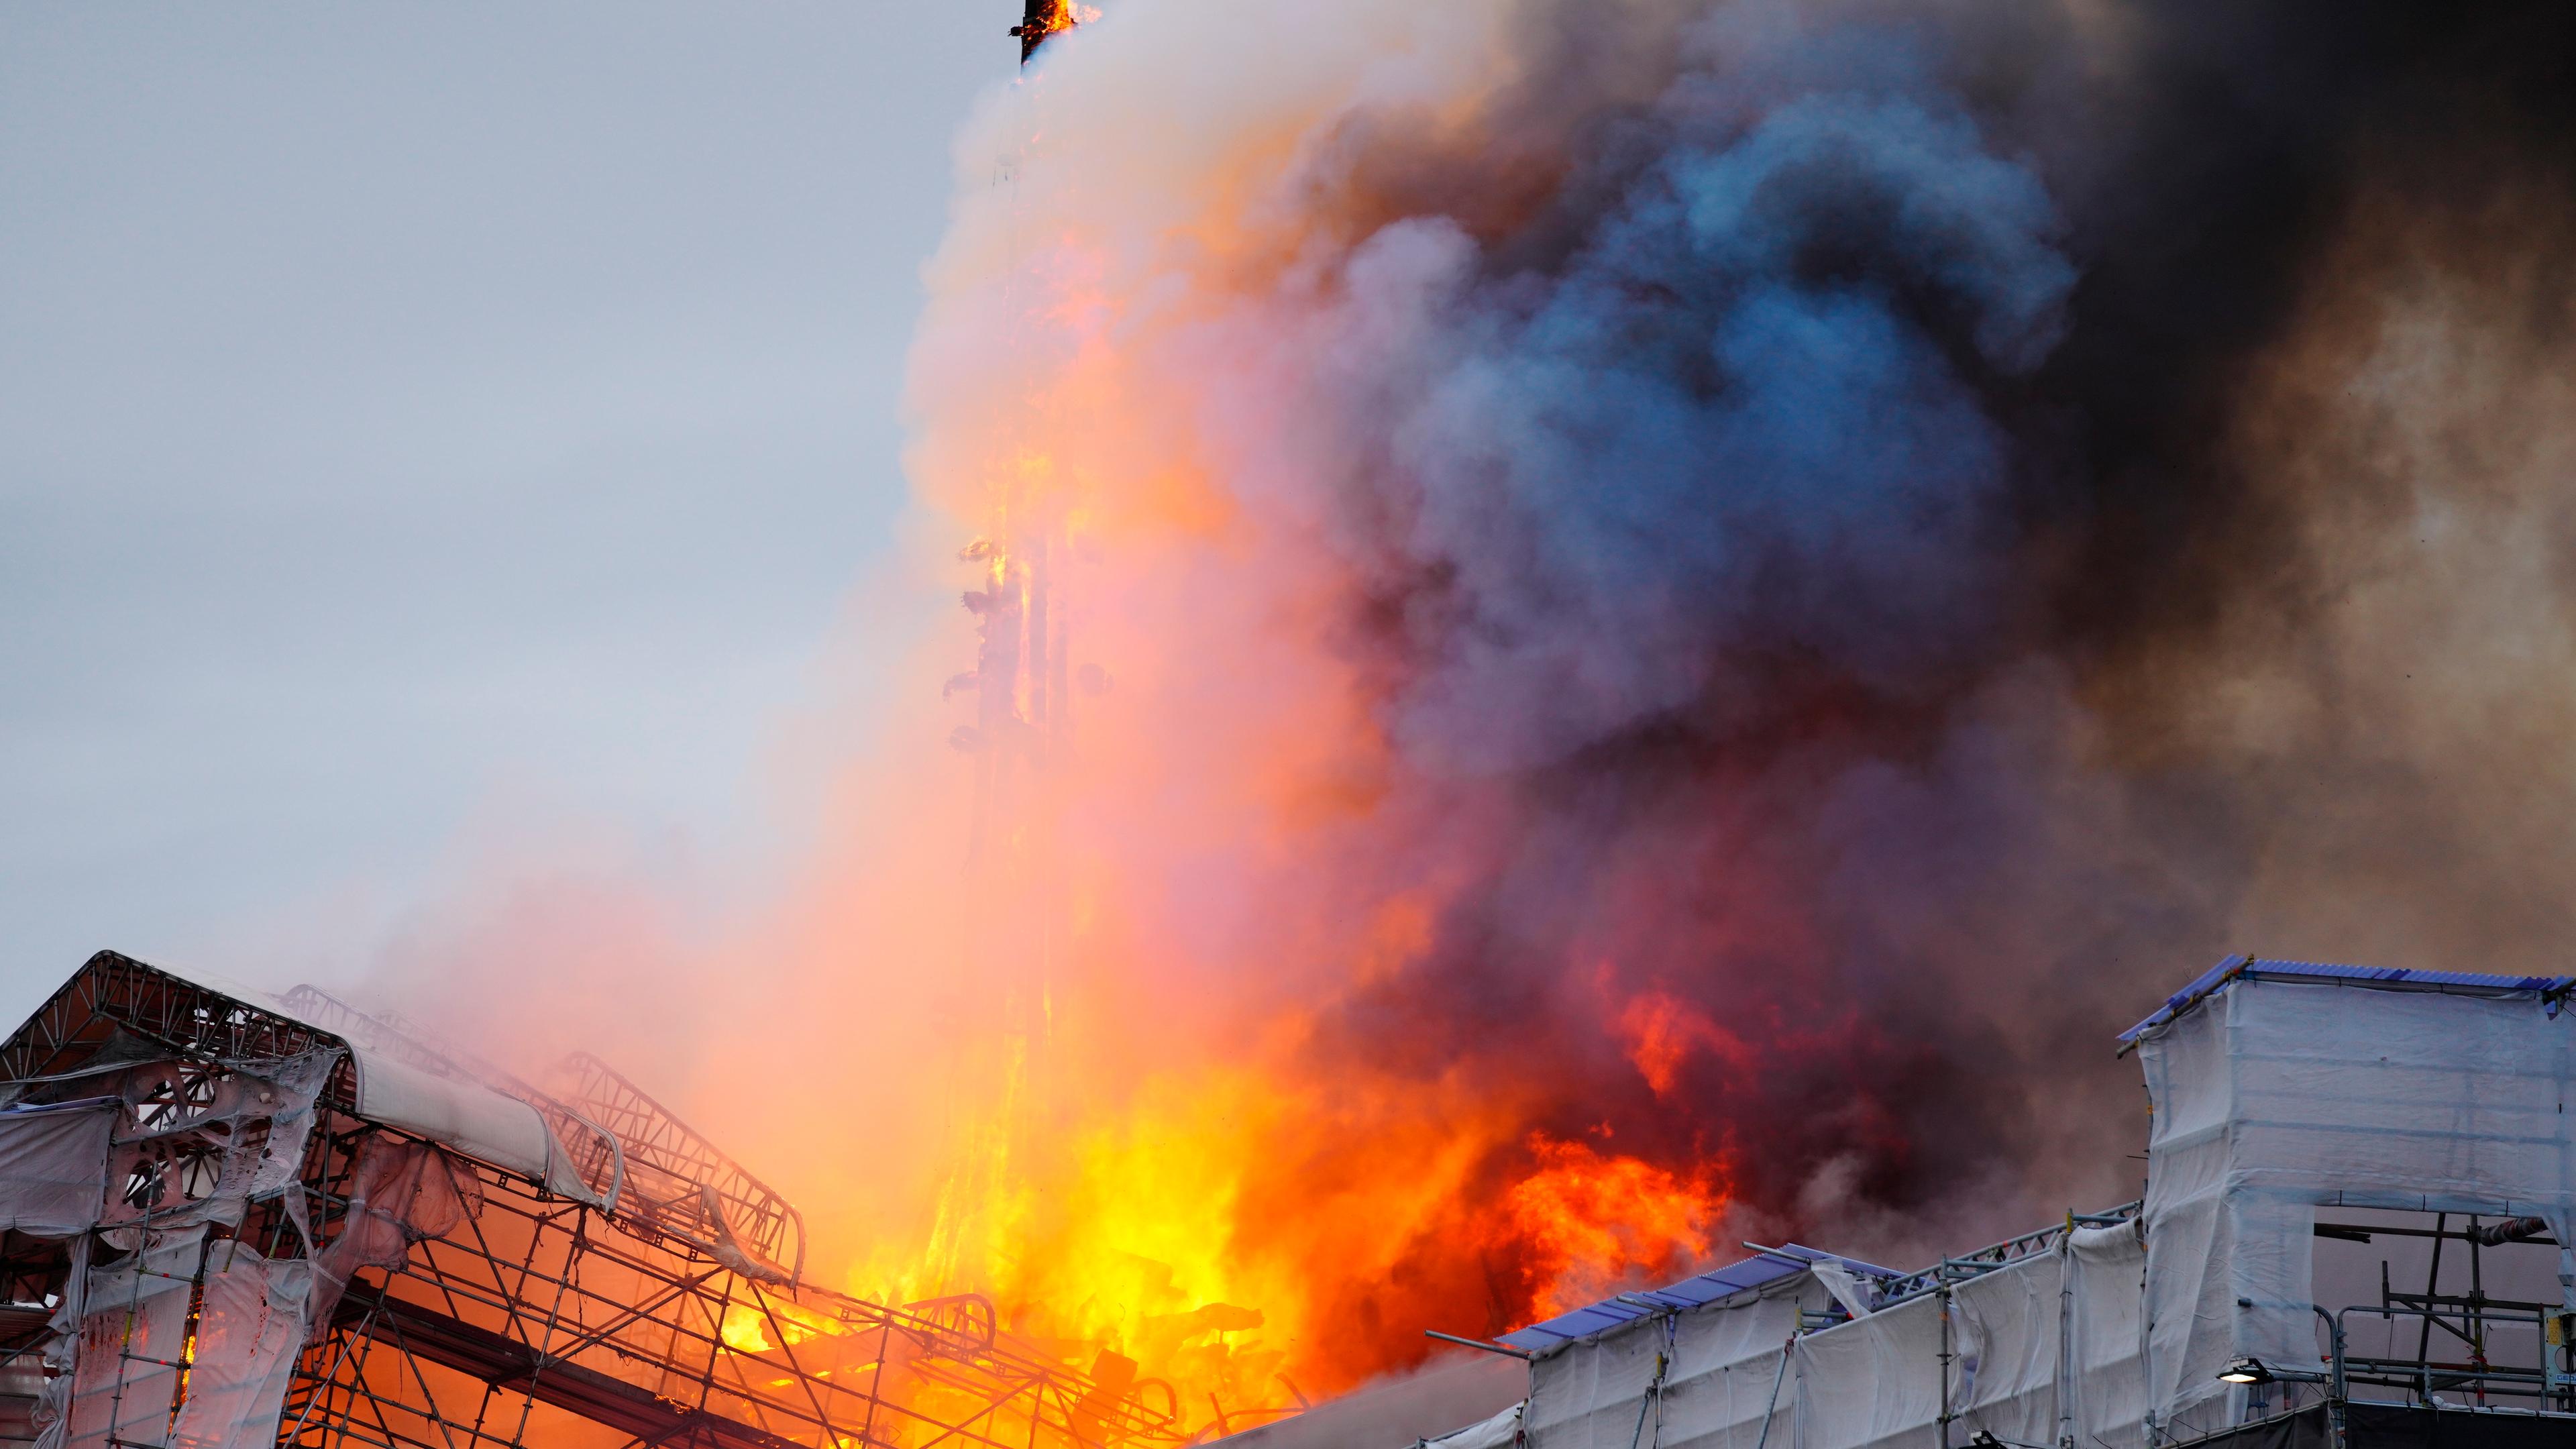  Feuer und Rauch steigen aus der Alten Börse, "Boersen" bei einem Brand in Kopenhagen.